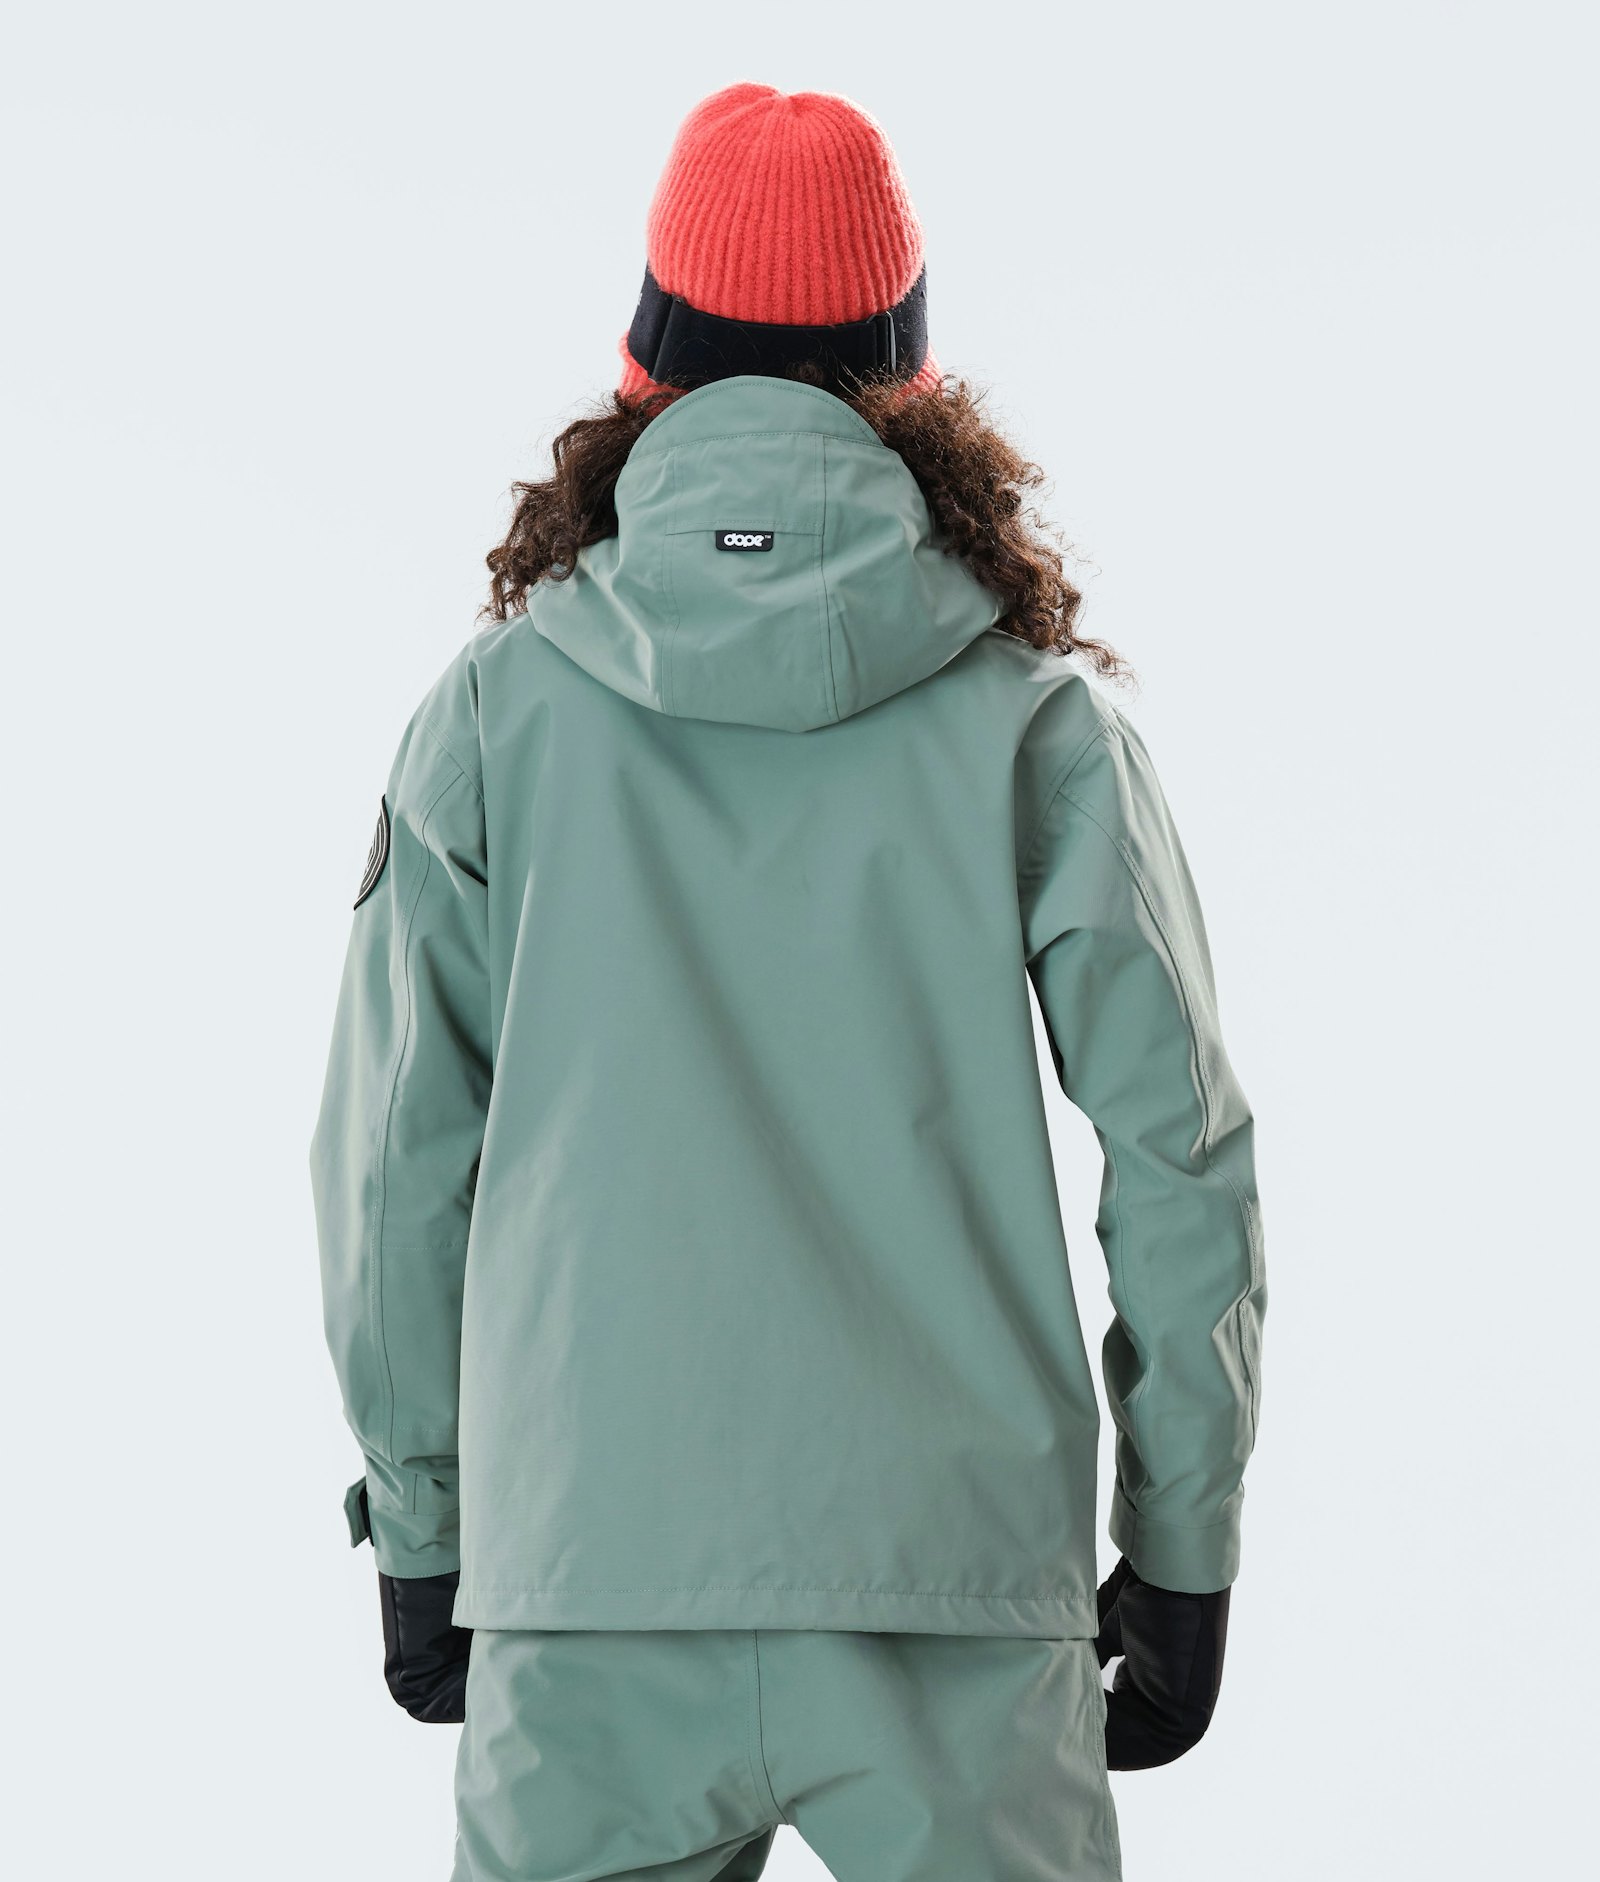 Dope Blizzard W Full Zip 2020 Ski Jacket Women Faded Green